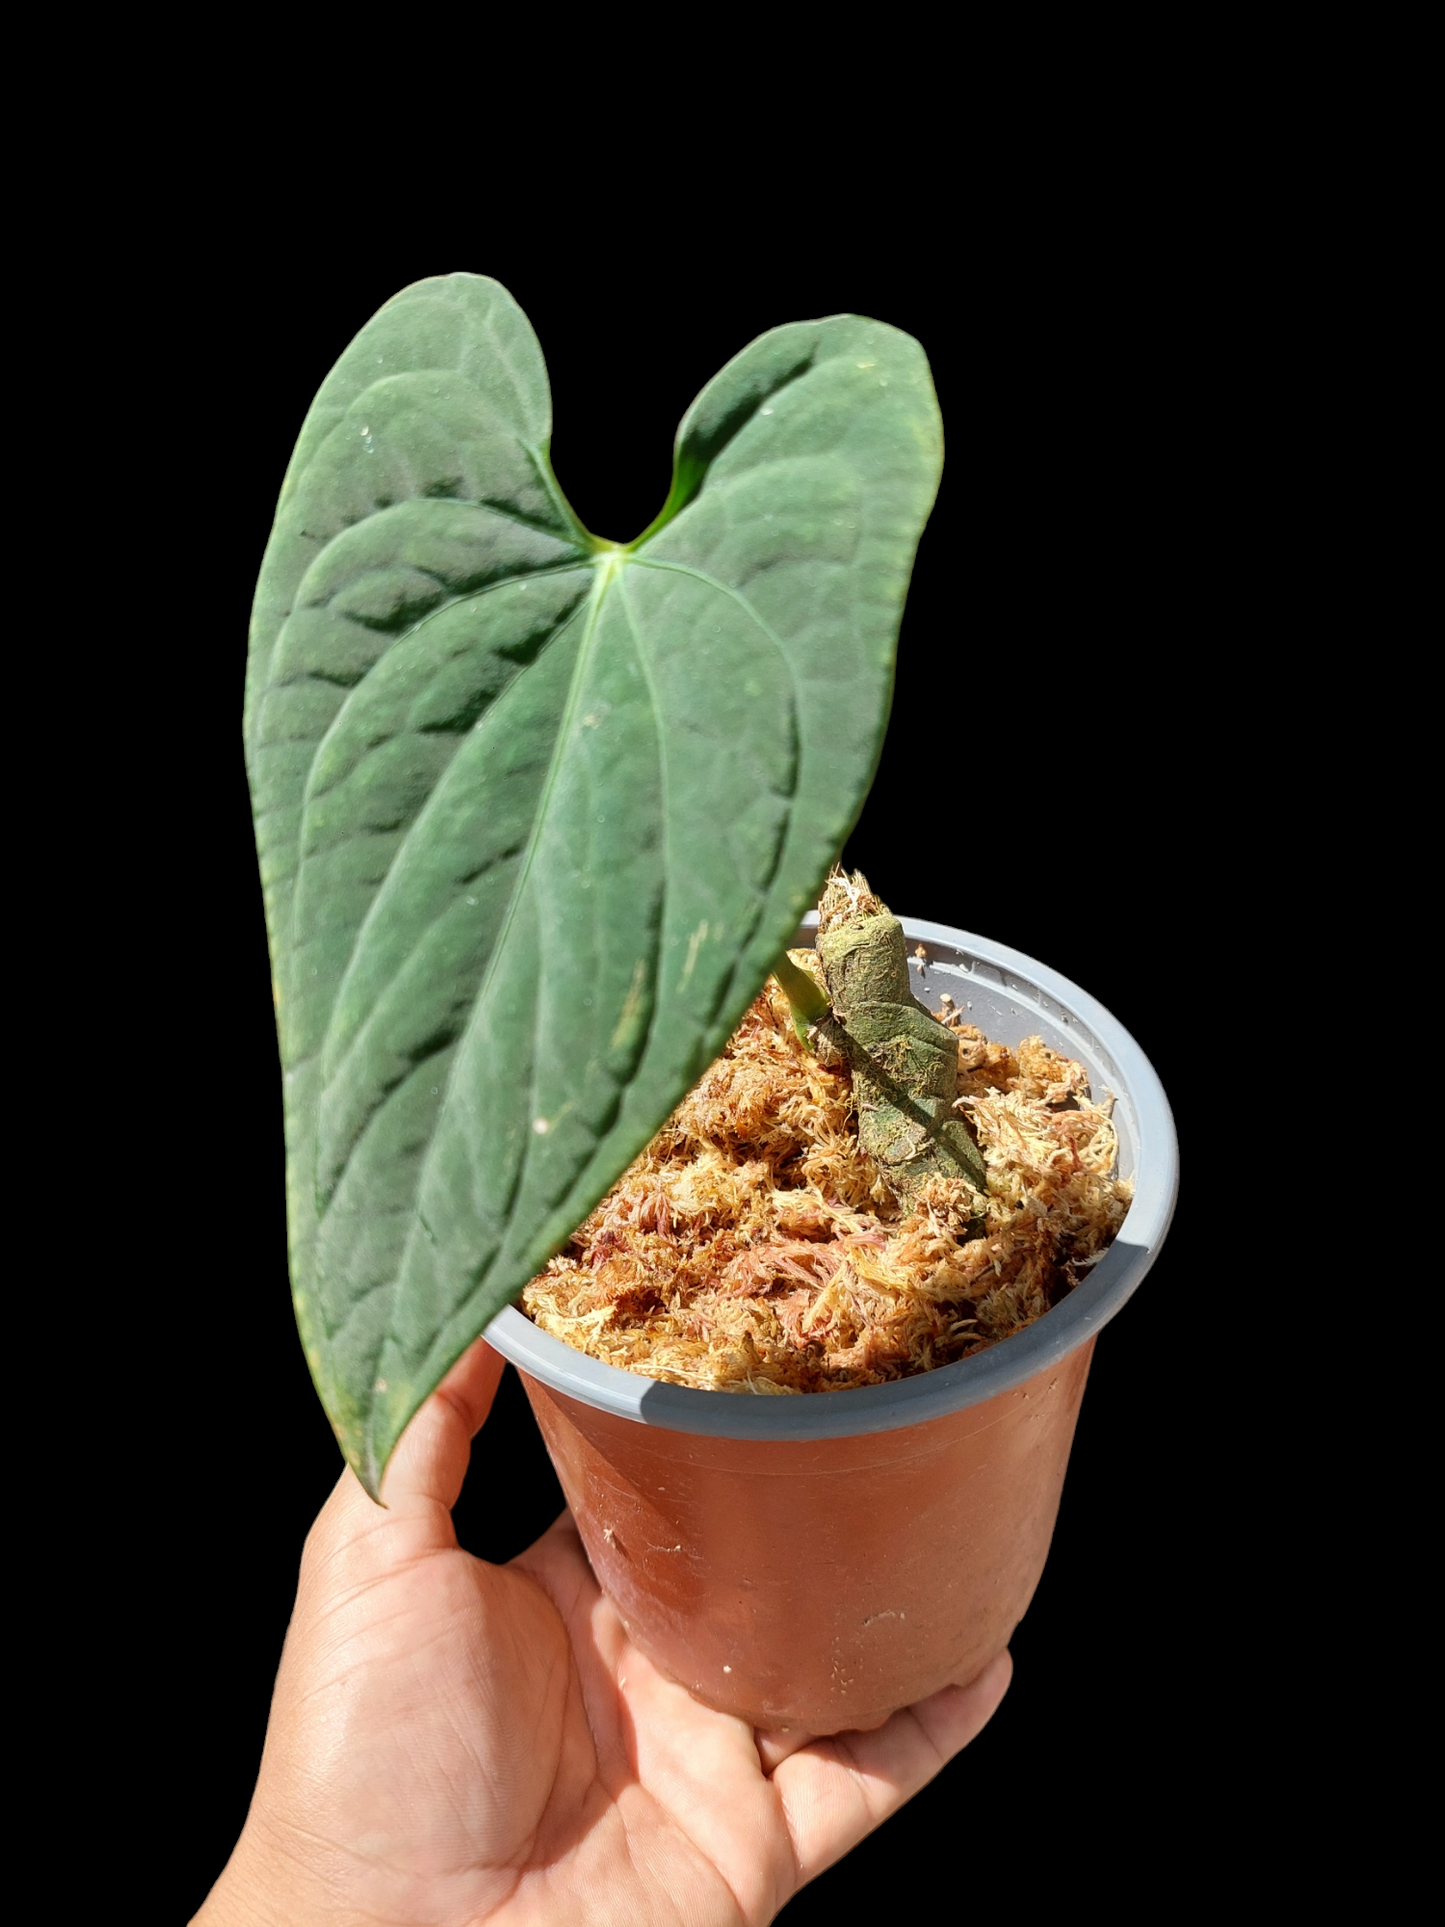 Anthurium sp. "Tarapoto Velvet" A0122 (EXACT PLANT)